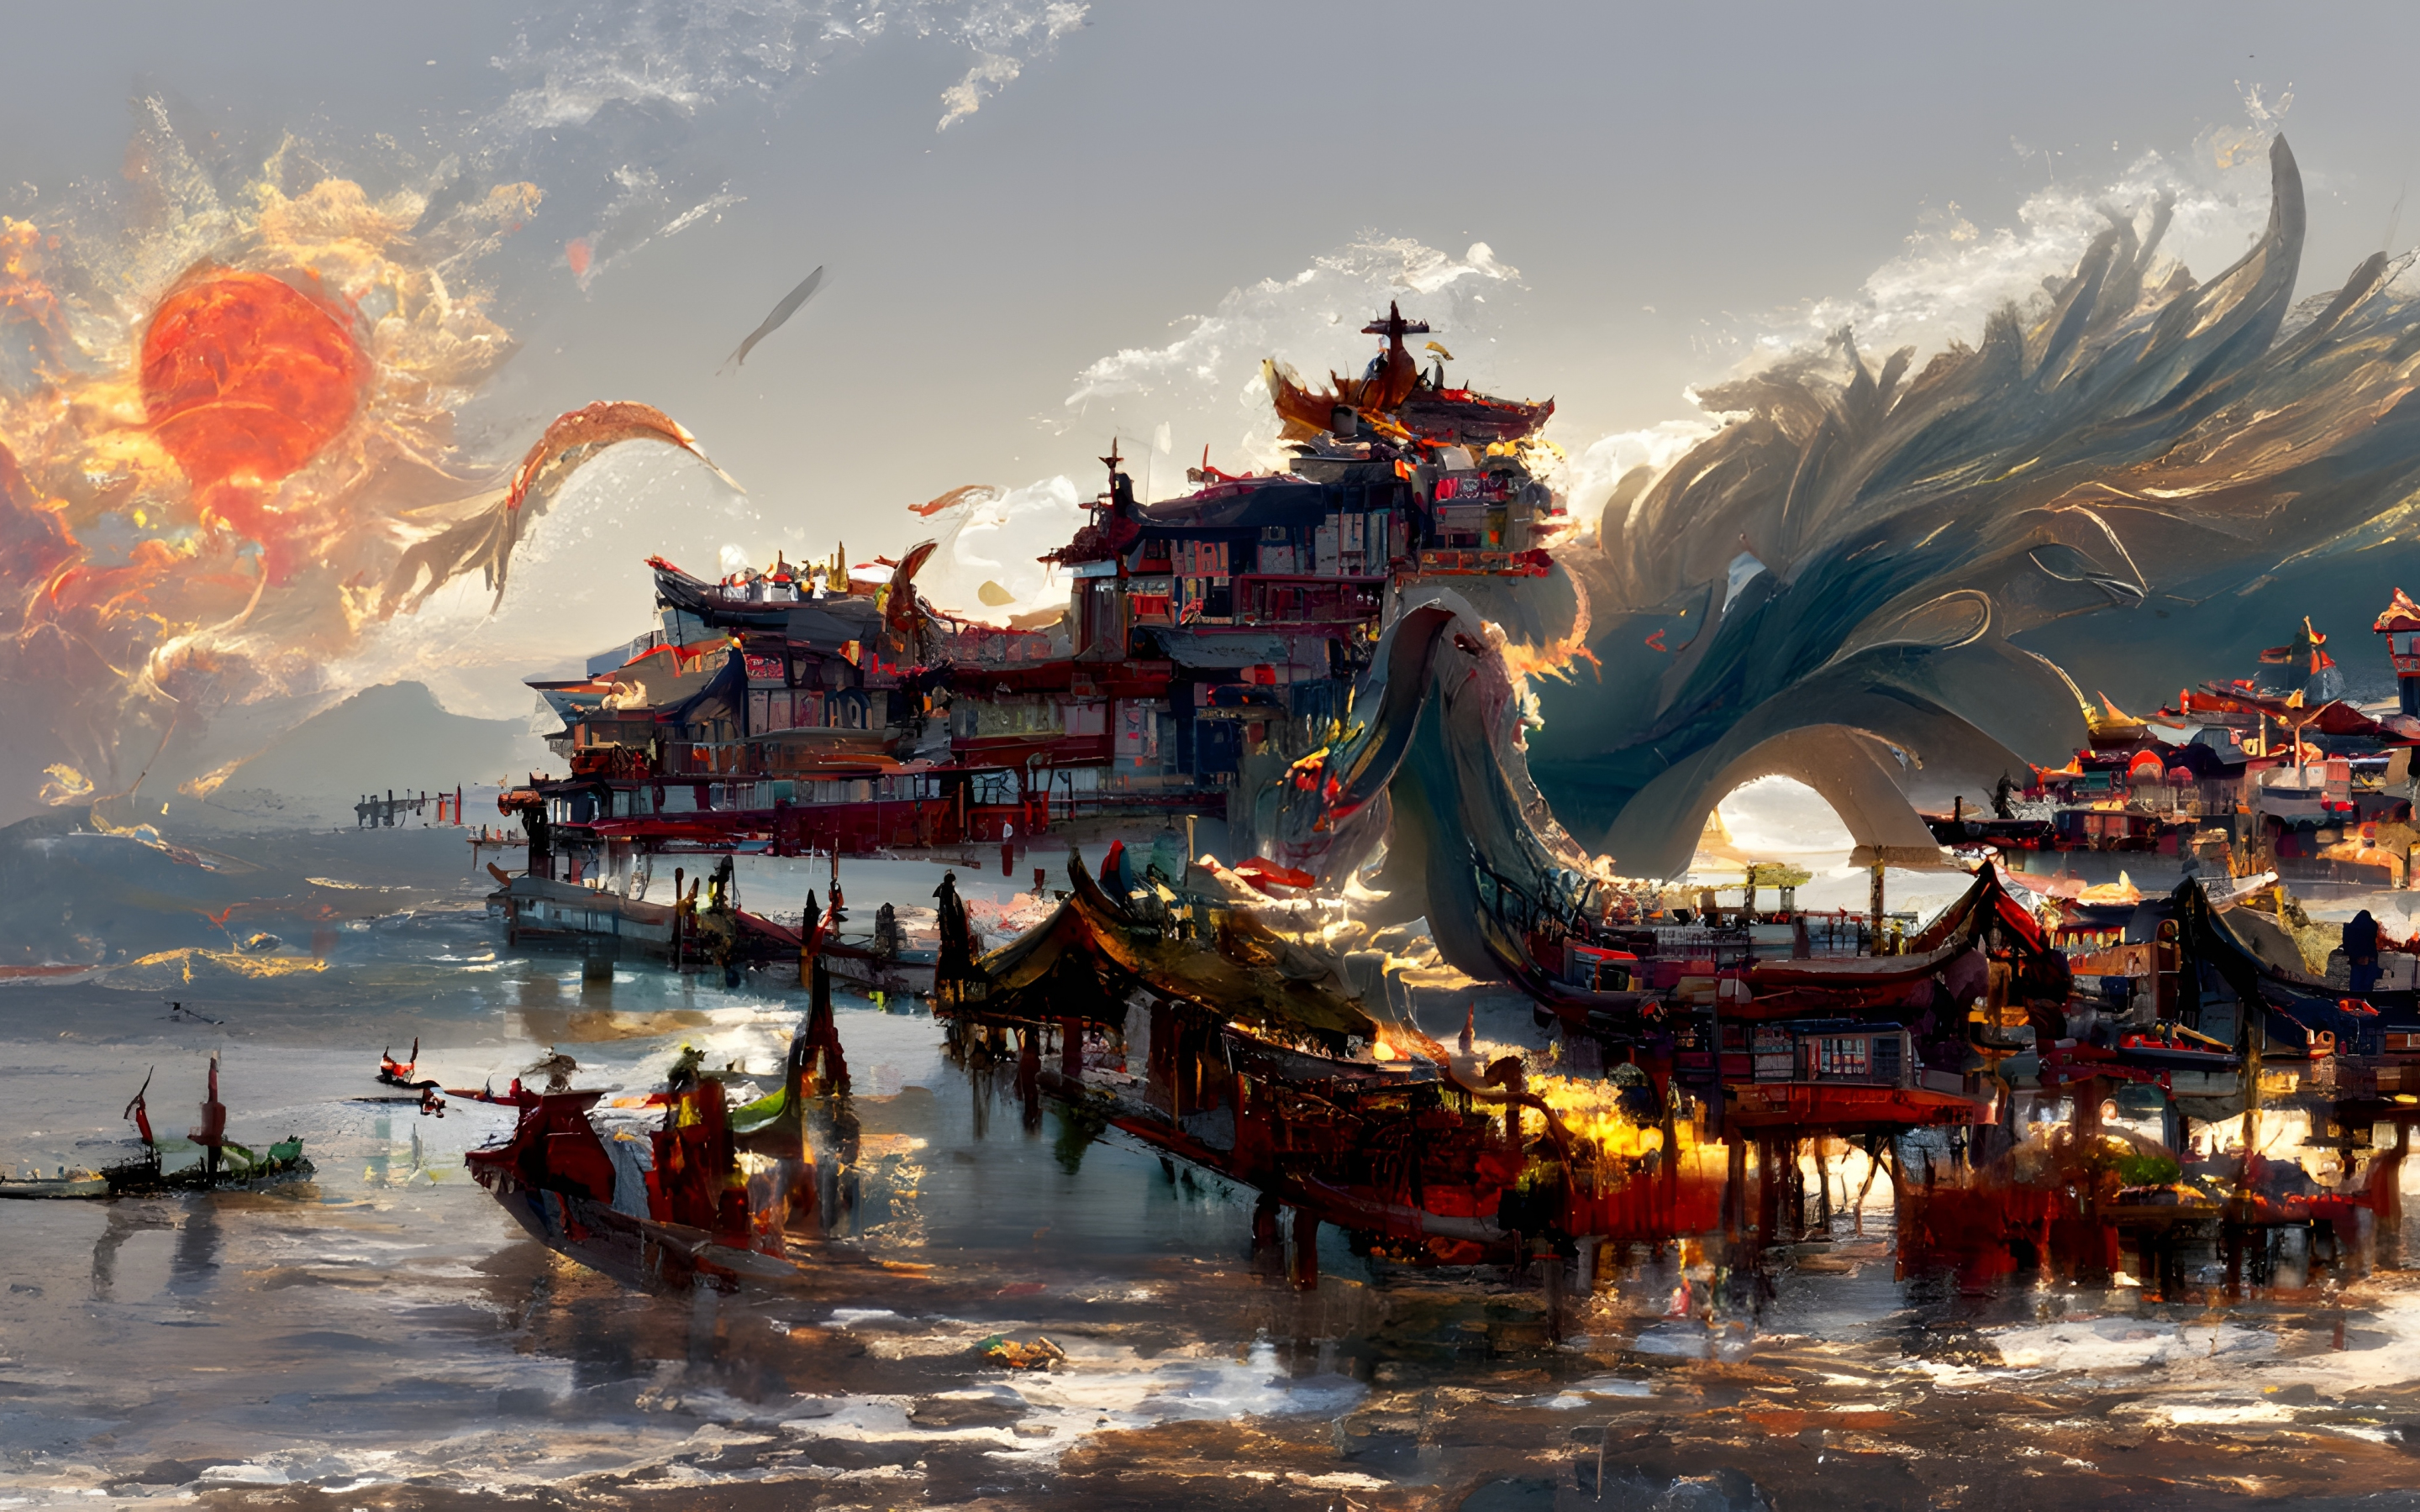 China's ancient town, dragon, fantasy, art, 2880x1800 wallpaper